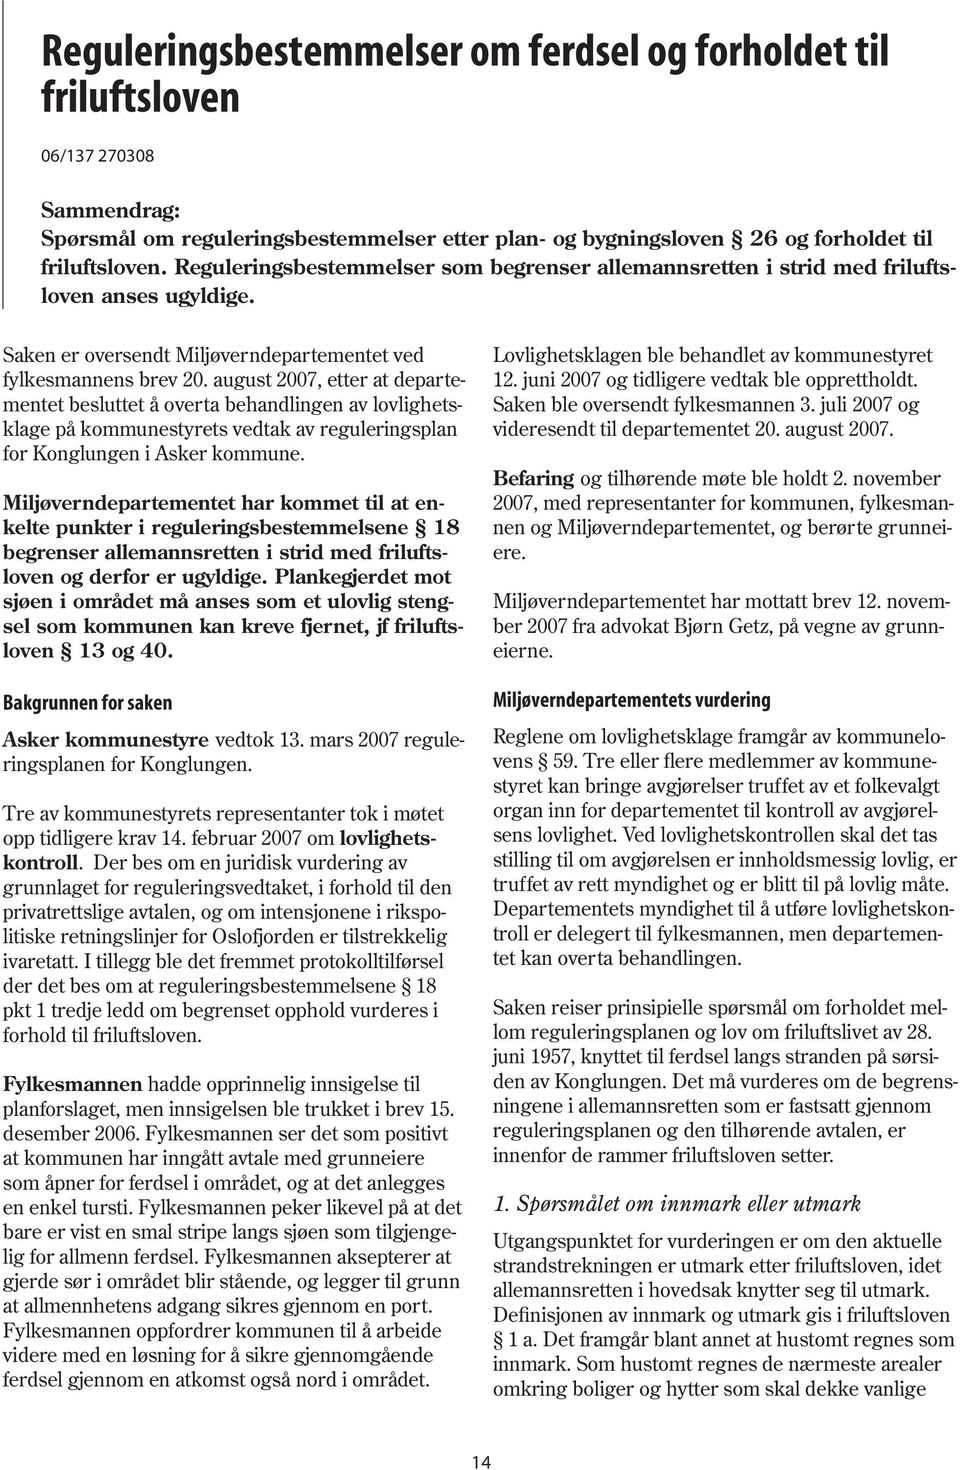 august 2007, etter at departementet besluttet å overta behandlingen av lovlighetsklage på kommunestyrets vedtak av reguleringsplan for Konglungen i Asker kommune.